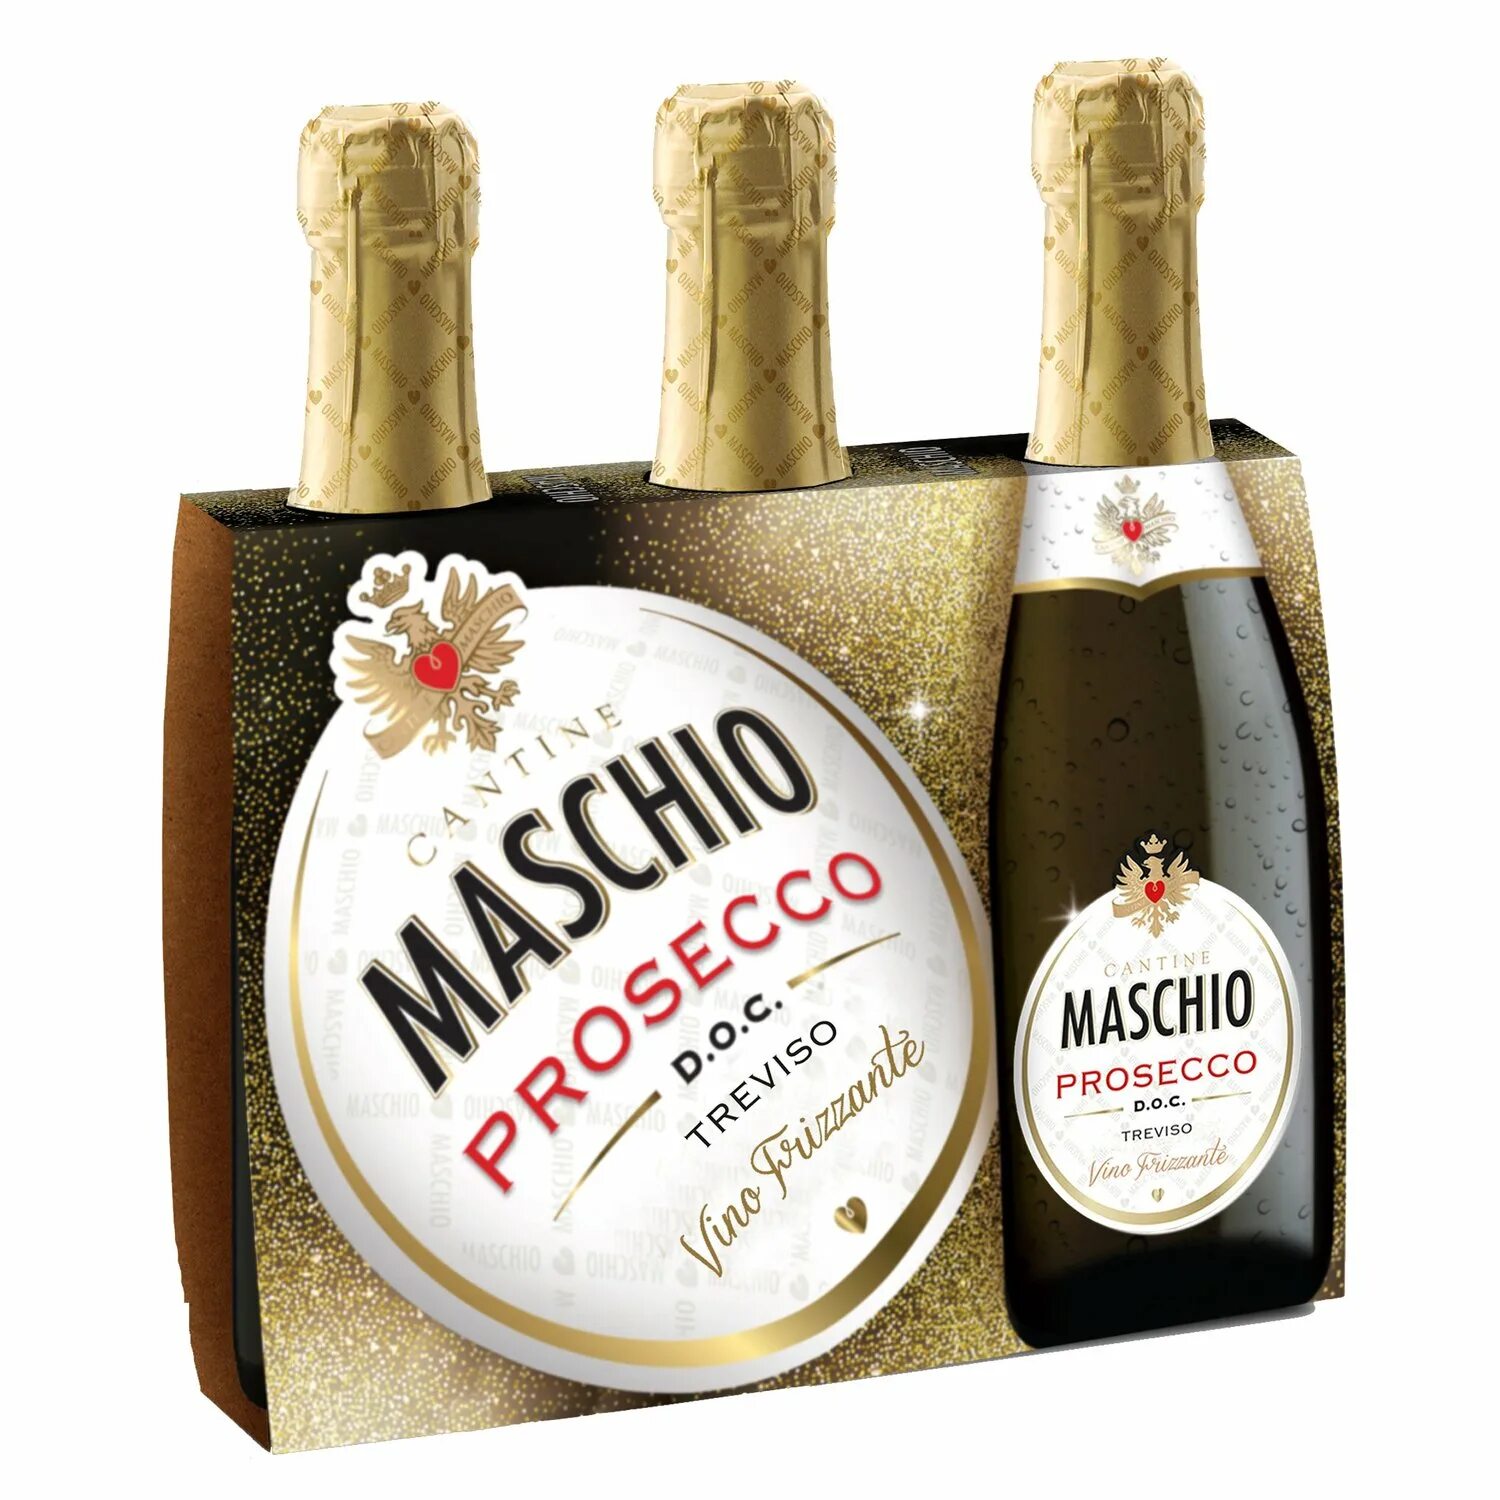 Маскио Просекко Тревизо. Maschio Prosecco шампанское Treviso. Маскио Просекко Тревизо Экстра драй. Маскио Просекко этикетка. Prosecco treviso купить